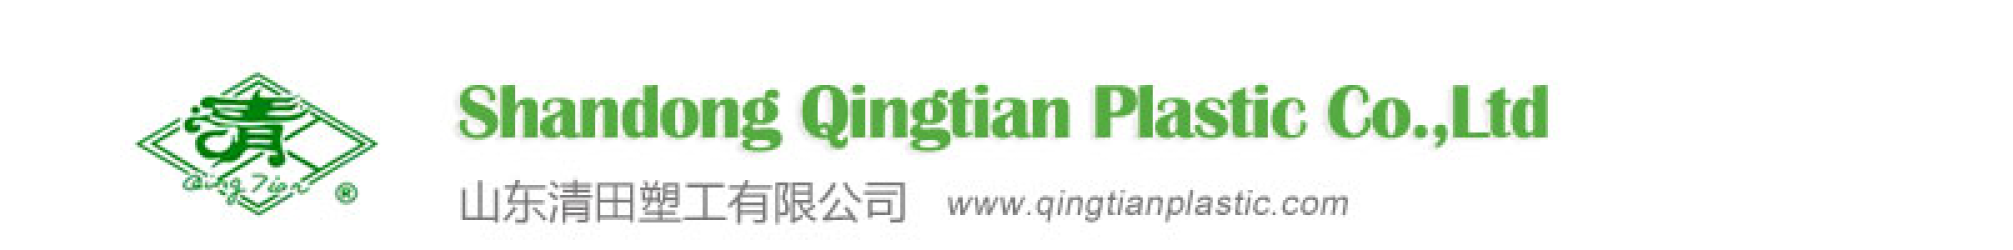 Shandong Qingtian Plastics Co. Ltd